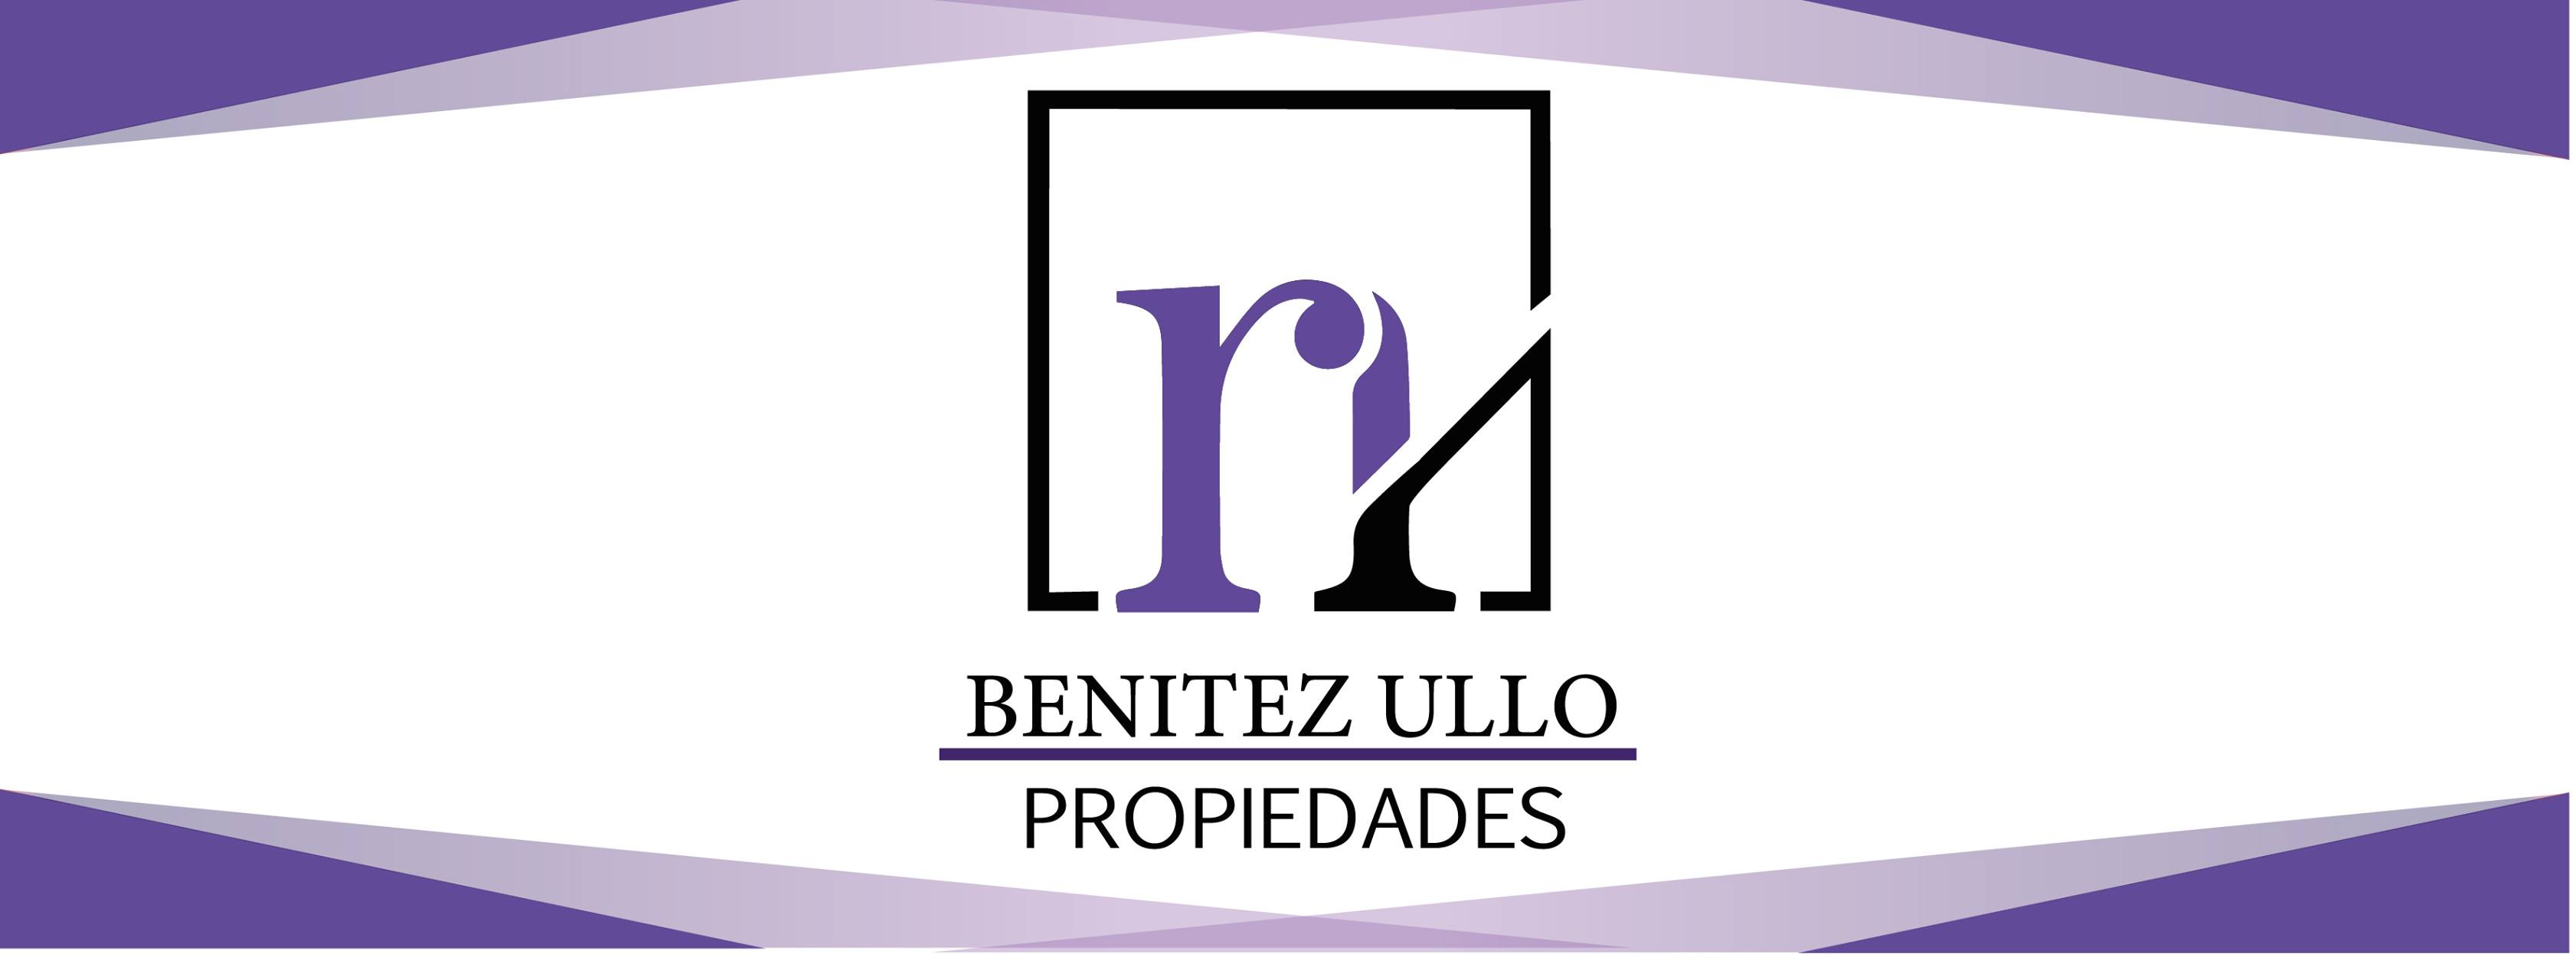 Benitez Ullo Propiedades